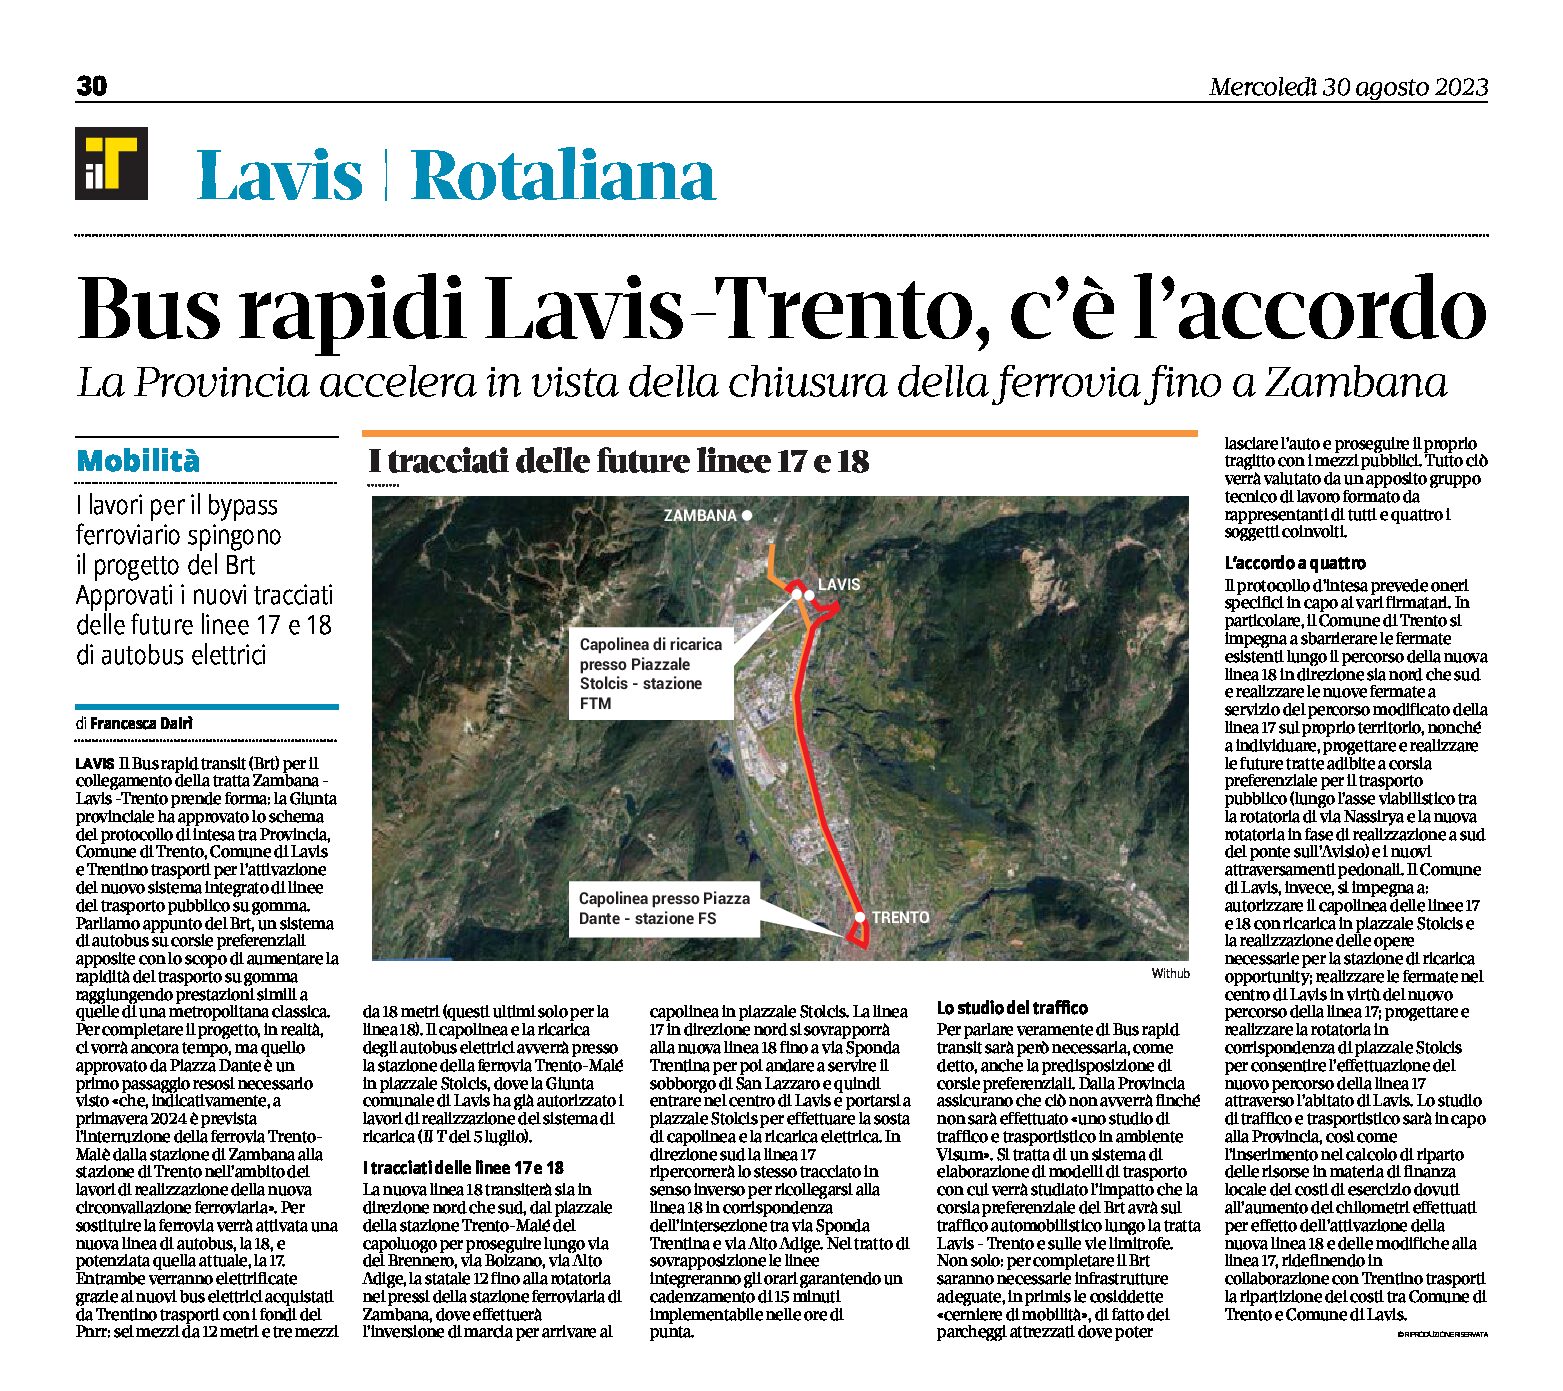 Bus rapidi Lavis-Trento: c’è l’accordo. La Provincia accelera in vista della chiusura della ferrovia fino a Zambana